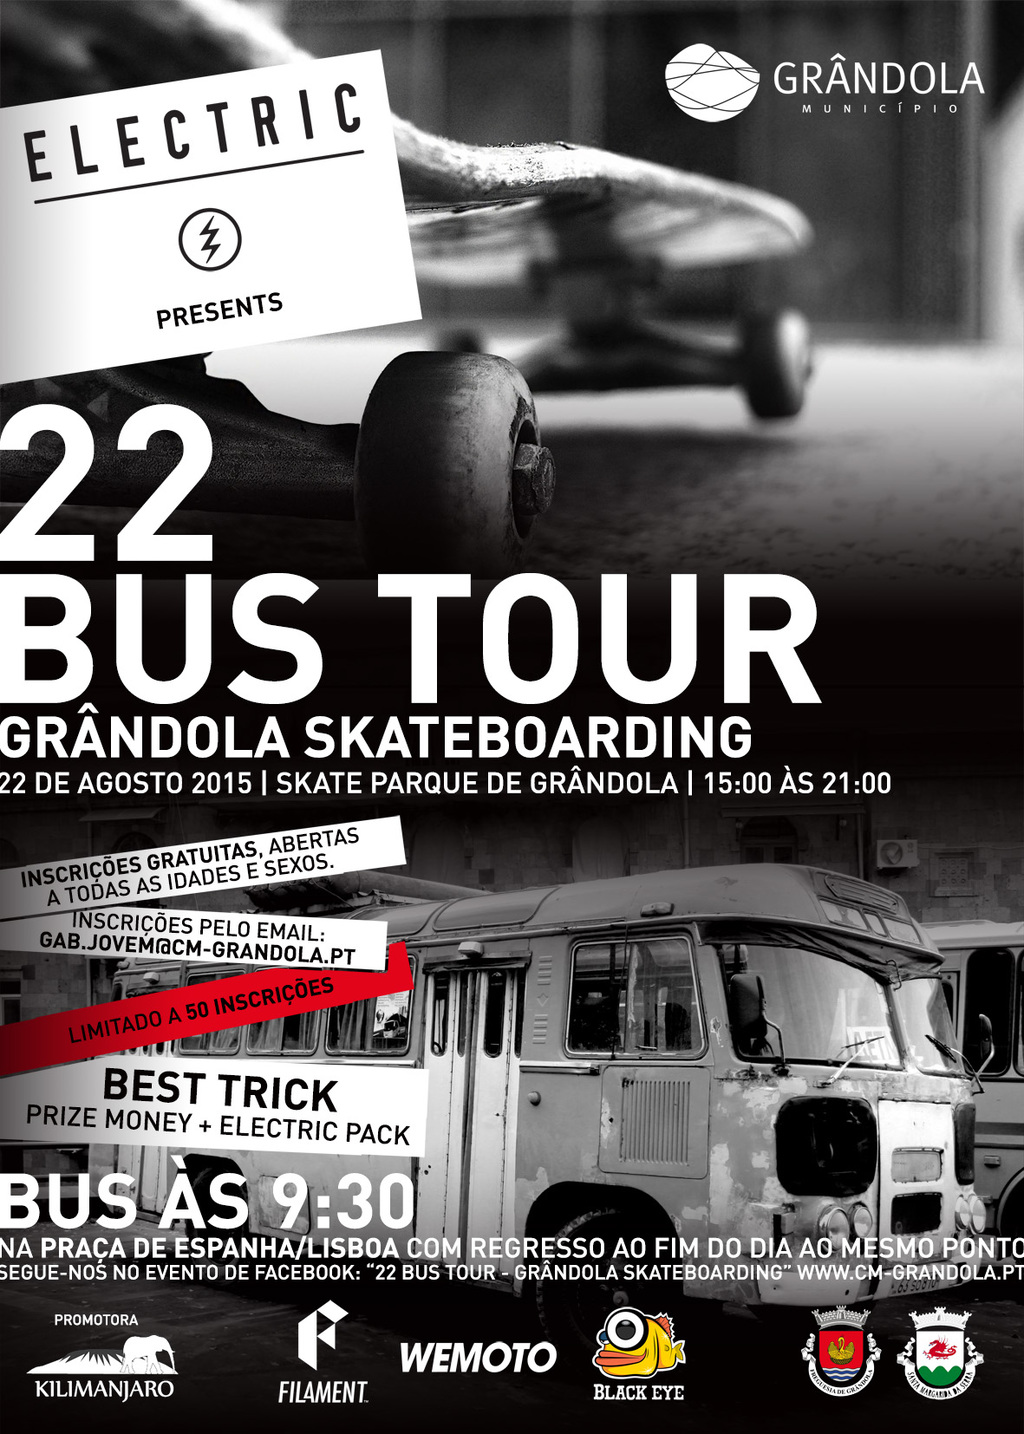 A Maior Prova de Skate do Alentejo Litoral Chegou a Grândola! 22 Agosto – Bus Tour – Grândola Ska...